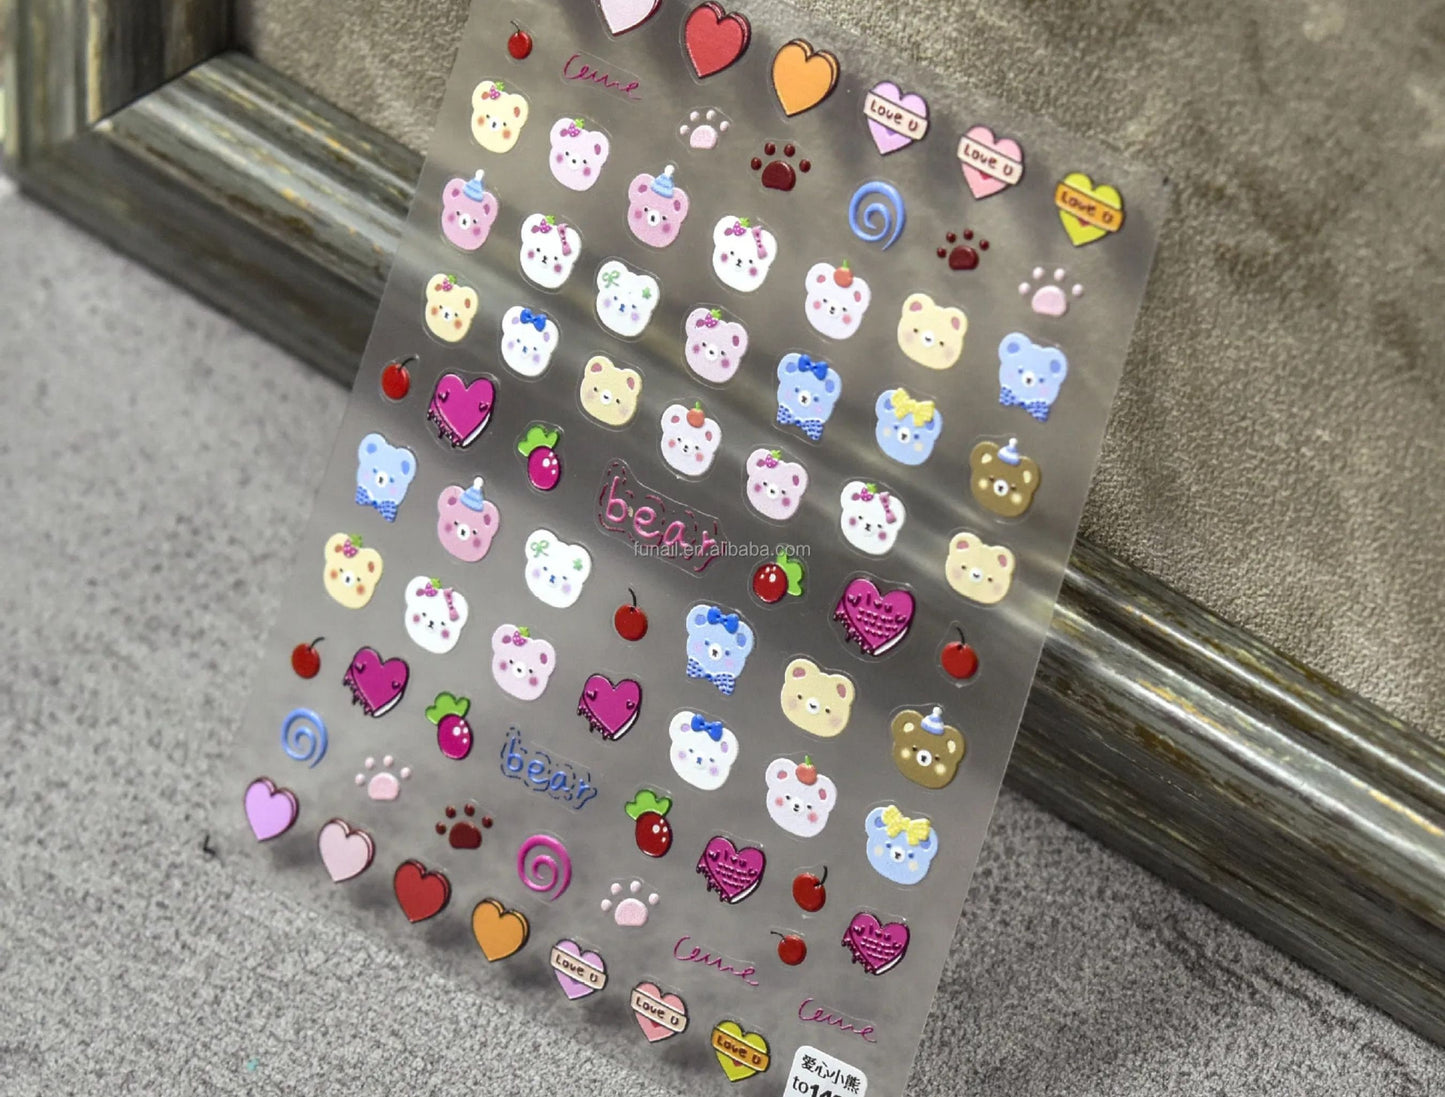 Kawaii Nail Decals, Cute Bear Nail Decals, Doodle Nail Decals, Heart Nail Decals, Kawaii Bears, Rainbow Bear Nail Stickers, Nail Stickers